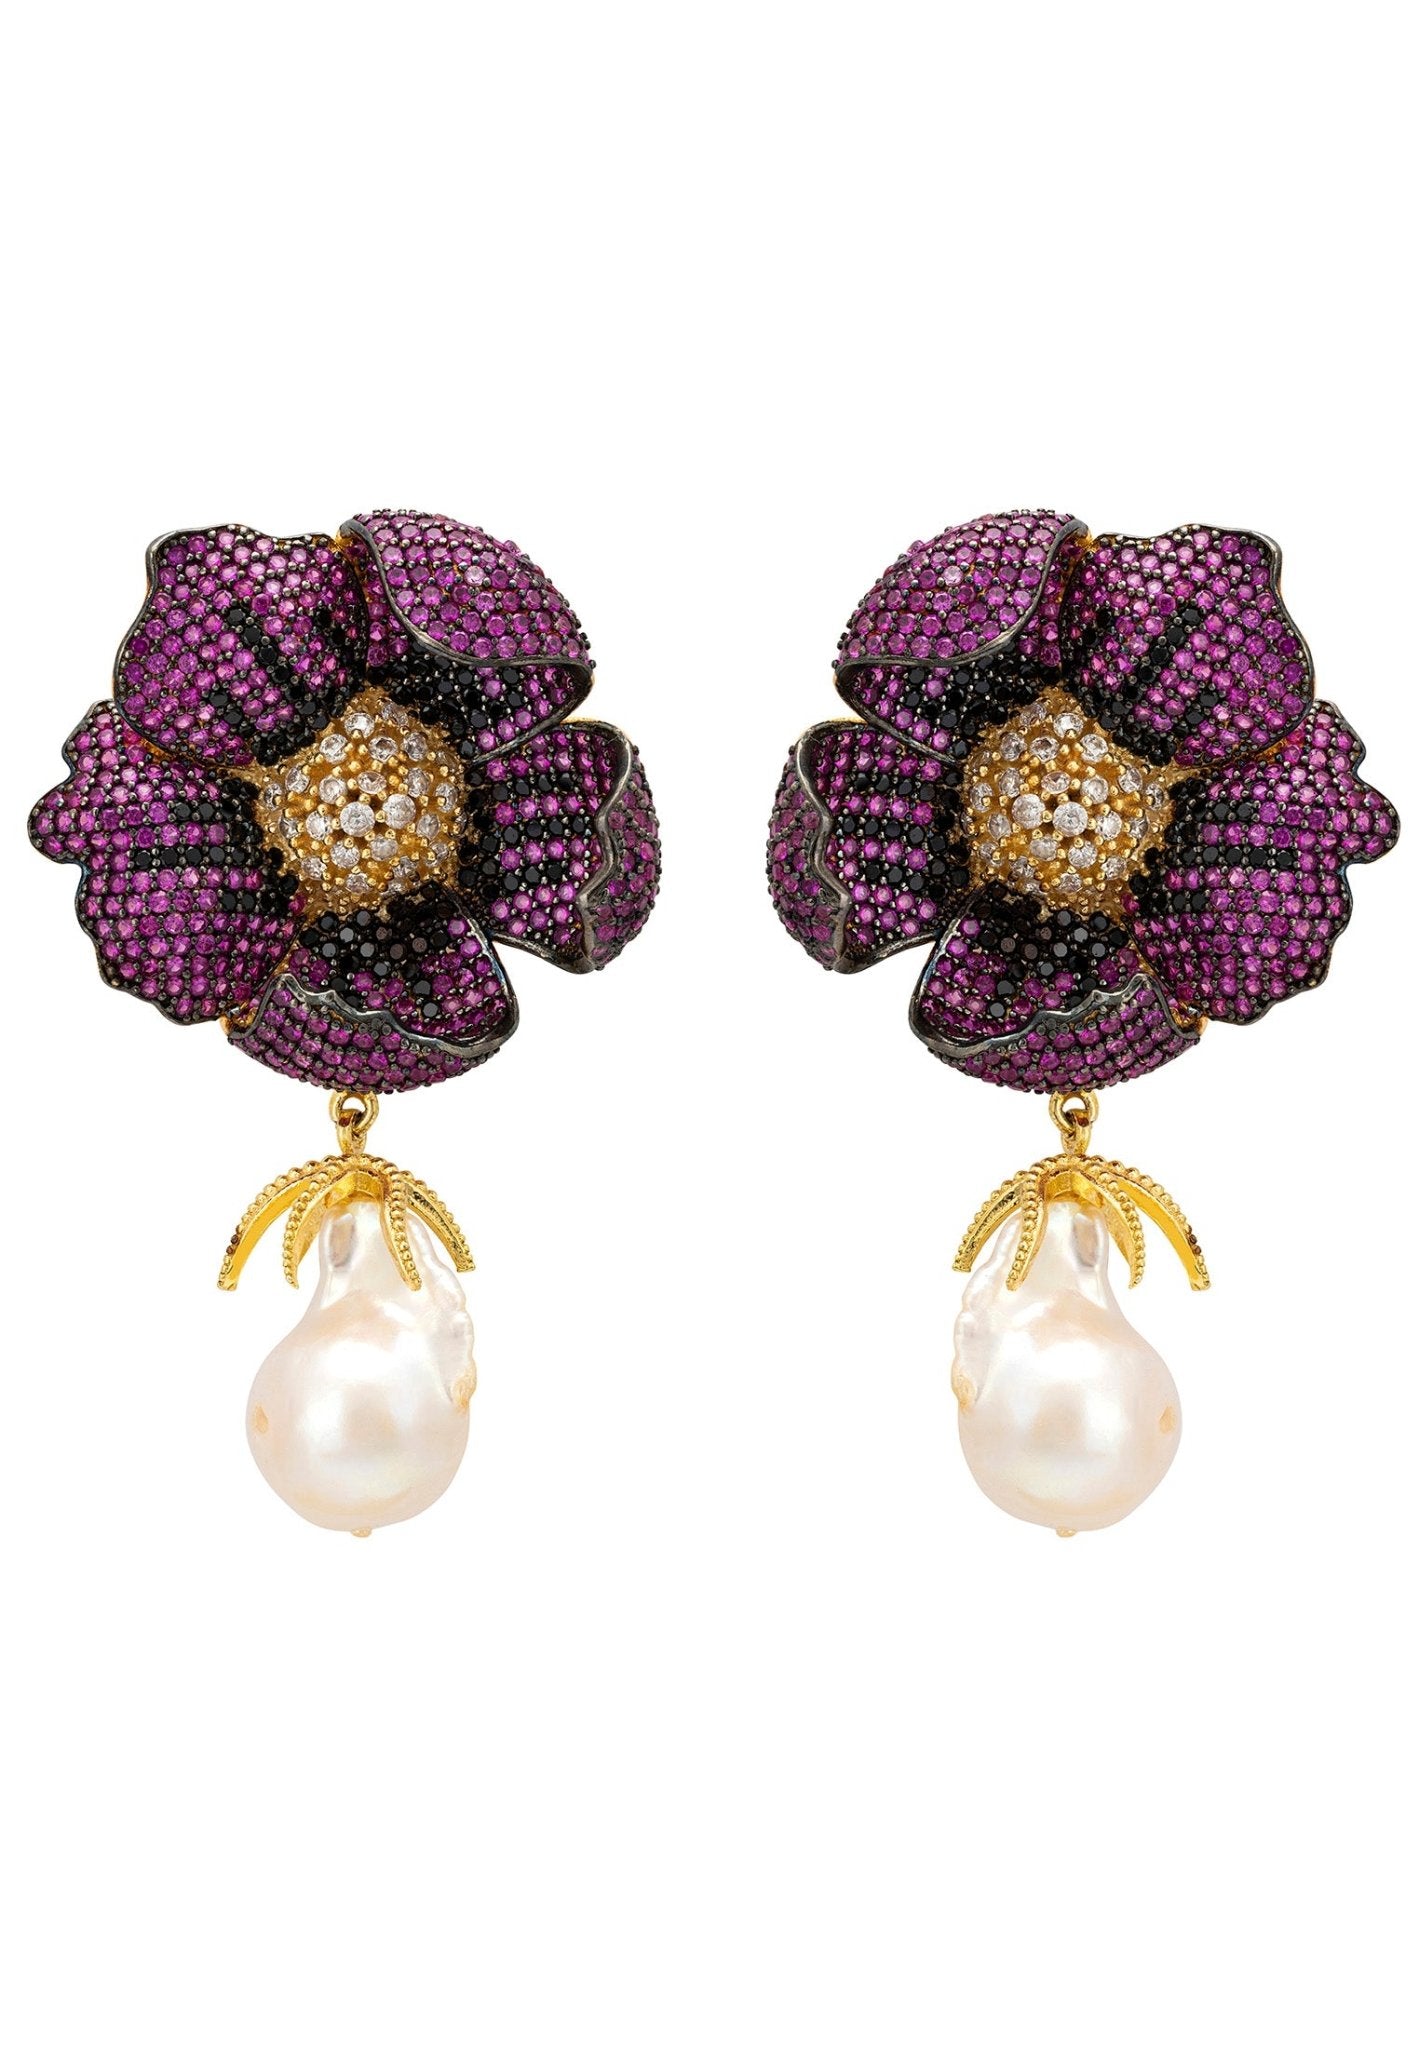 Poppy Flower Baroque Pearl Earrings Ruby Red Gold - LATELITA Earrings